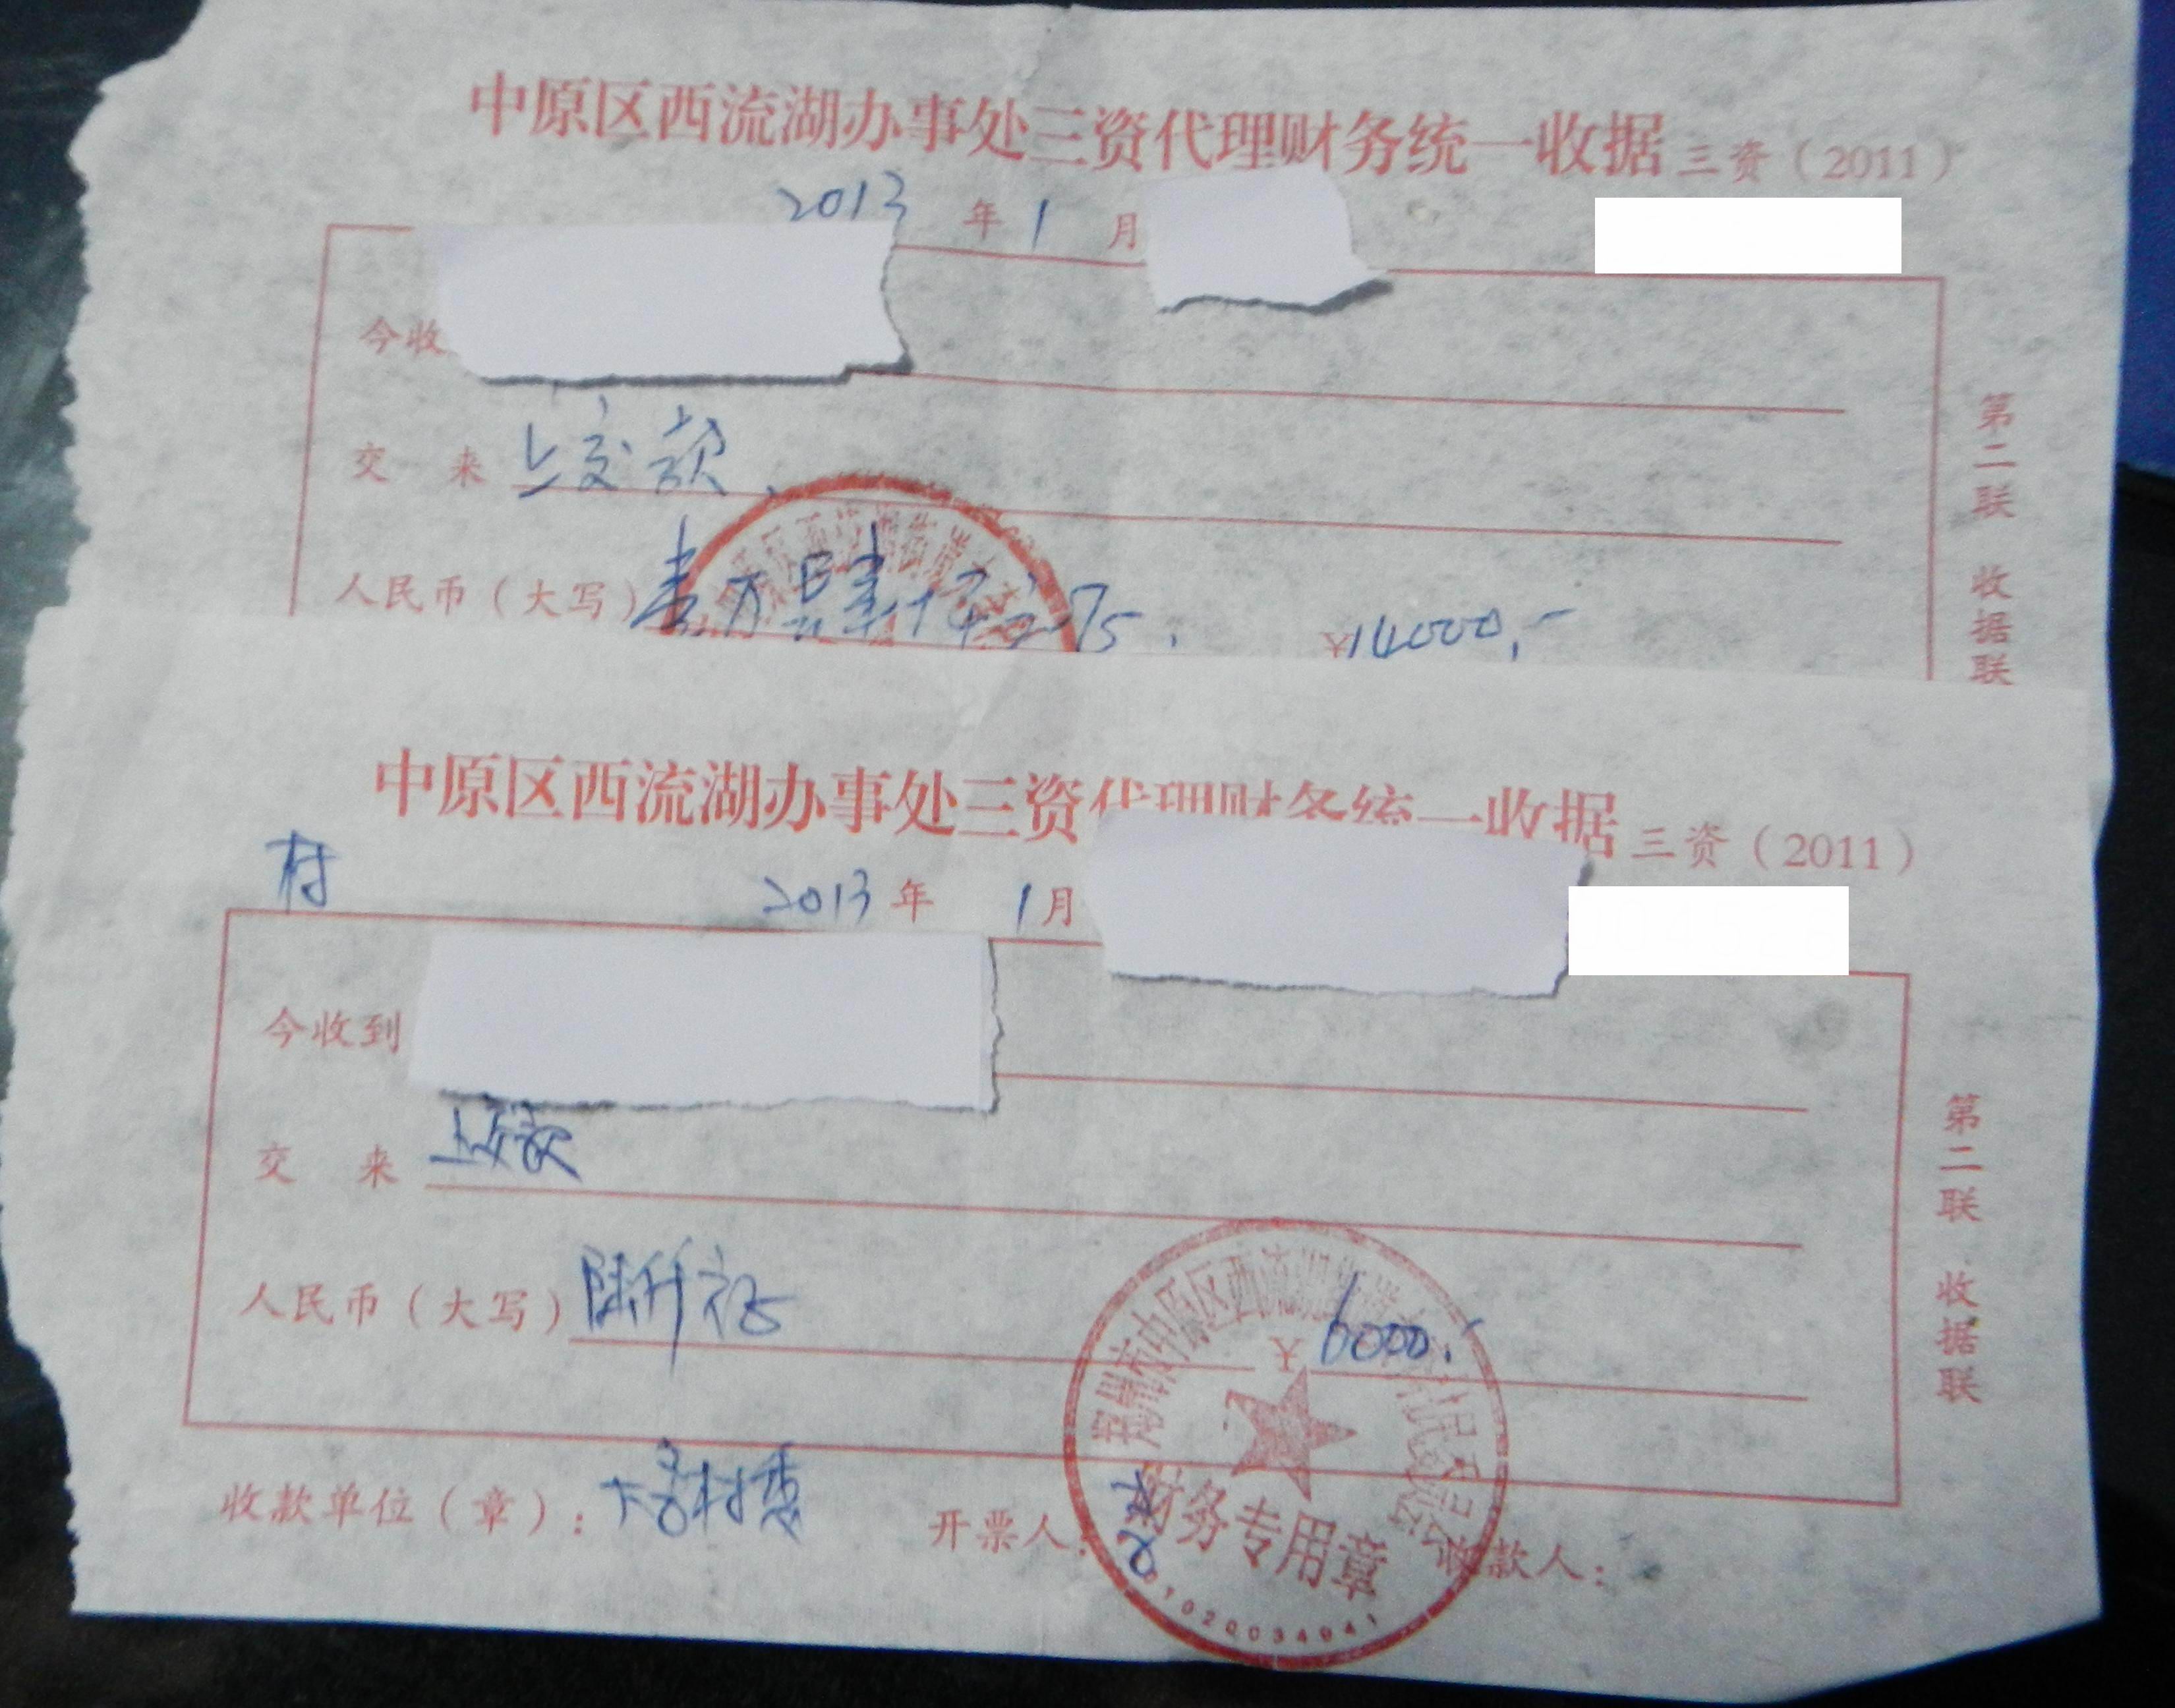 两张分别盖有大李村村委会和村民组财务章的收据印证了村民的说法